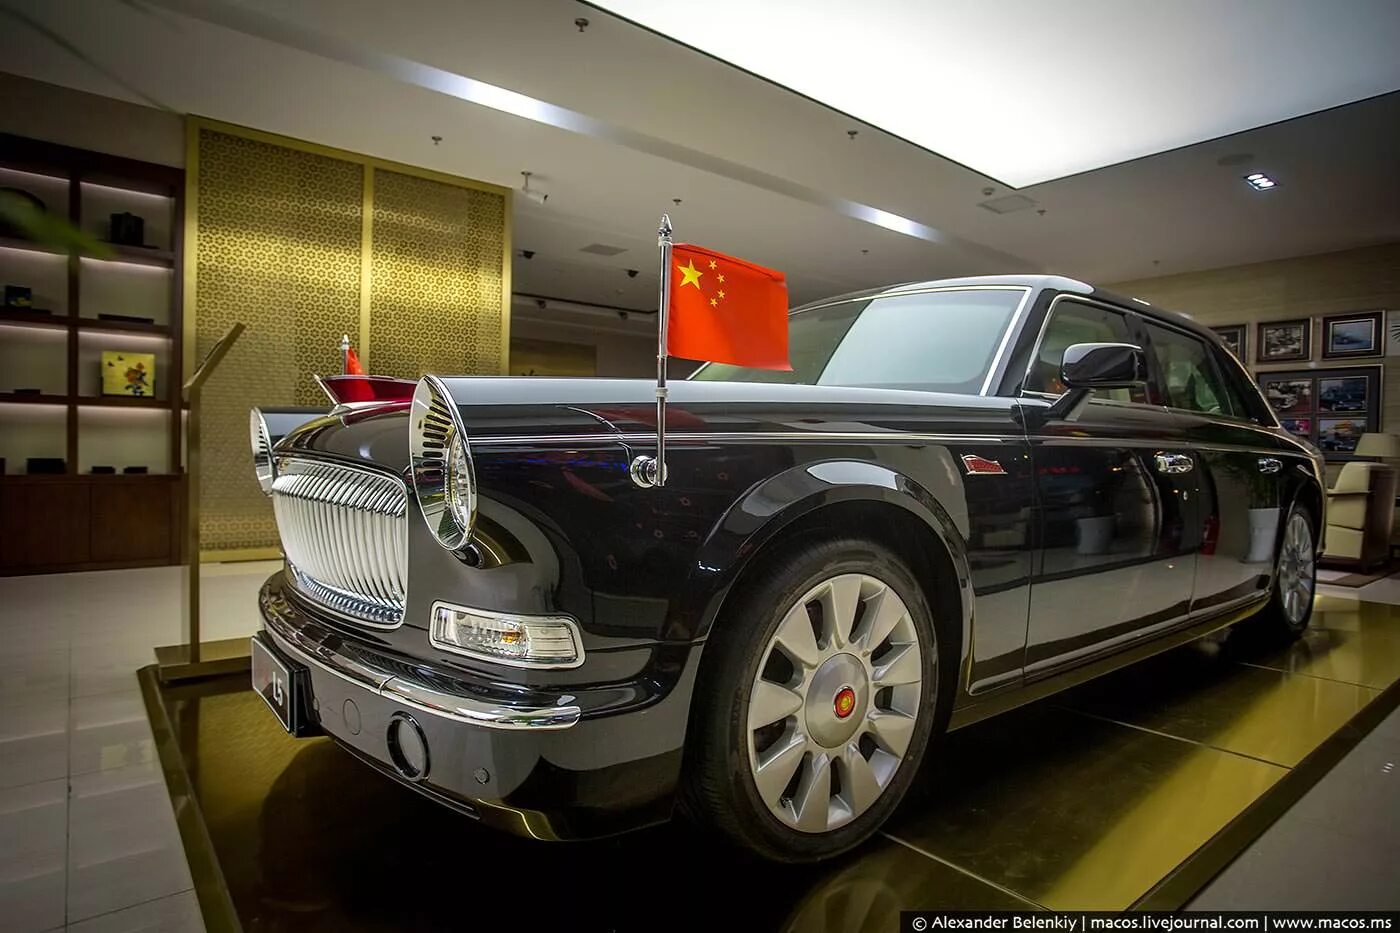 Hongqi Роллс Ройс. Китайский Rolls-Royce Hongqi e-hs9. Роллс Ройс Майбах. Самый дорогой Роллс Ройс в мире. Машина за 1 доллар